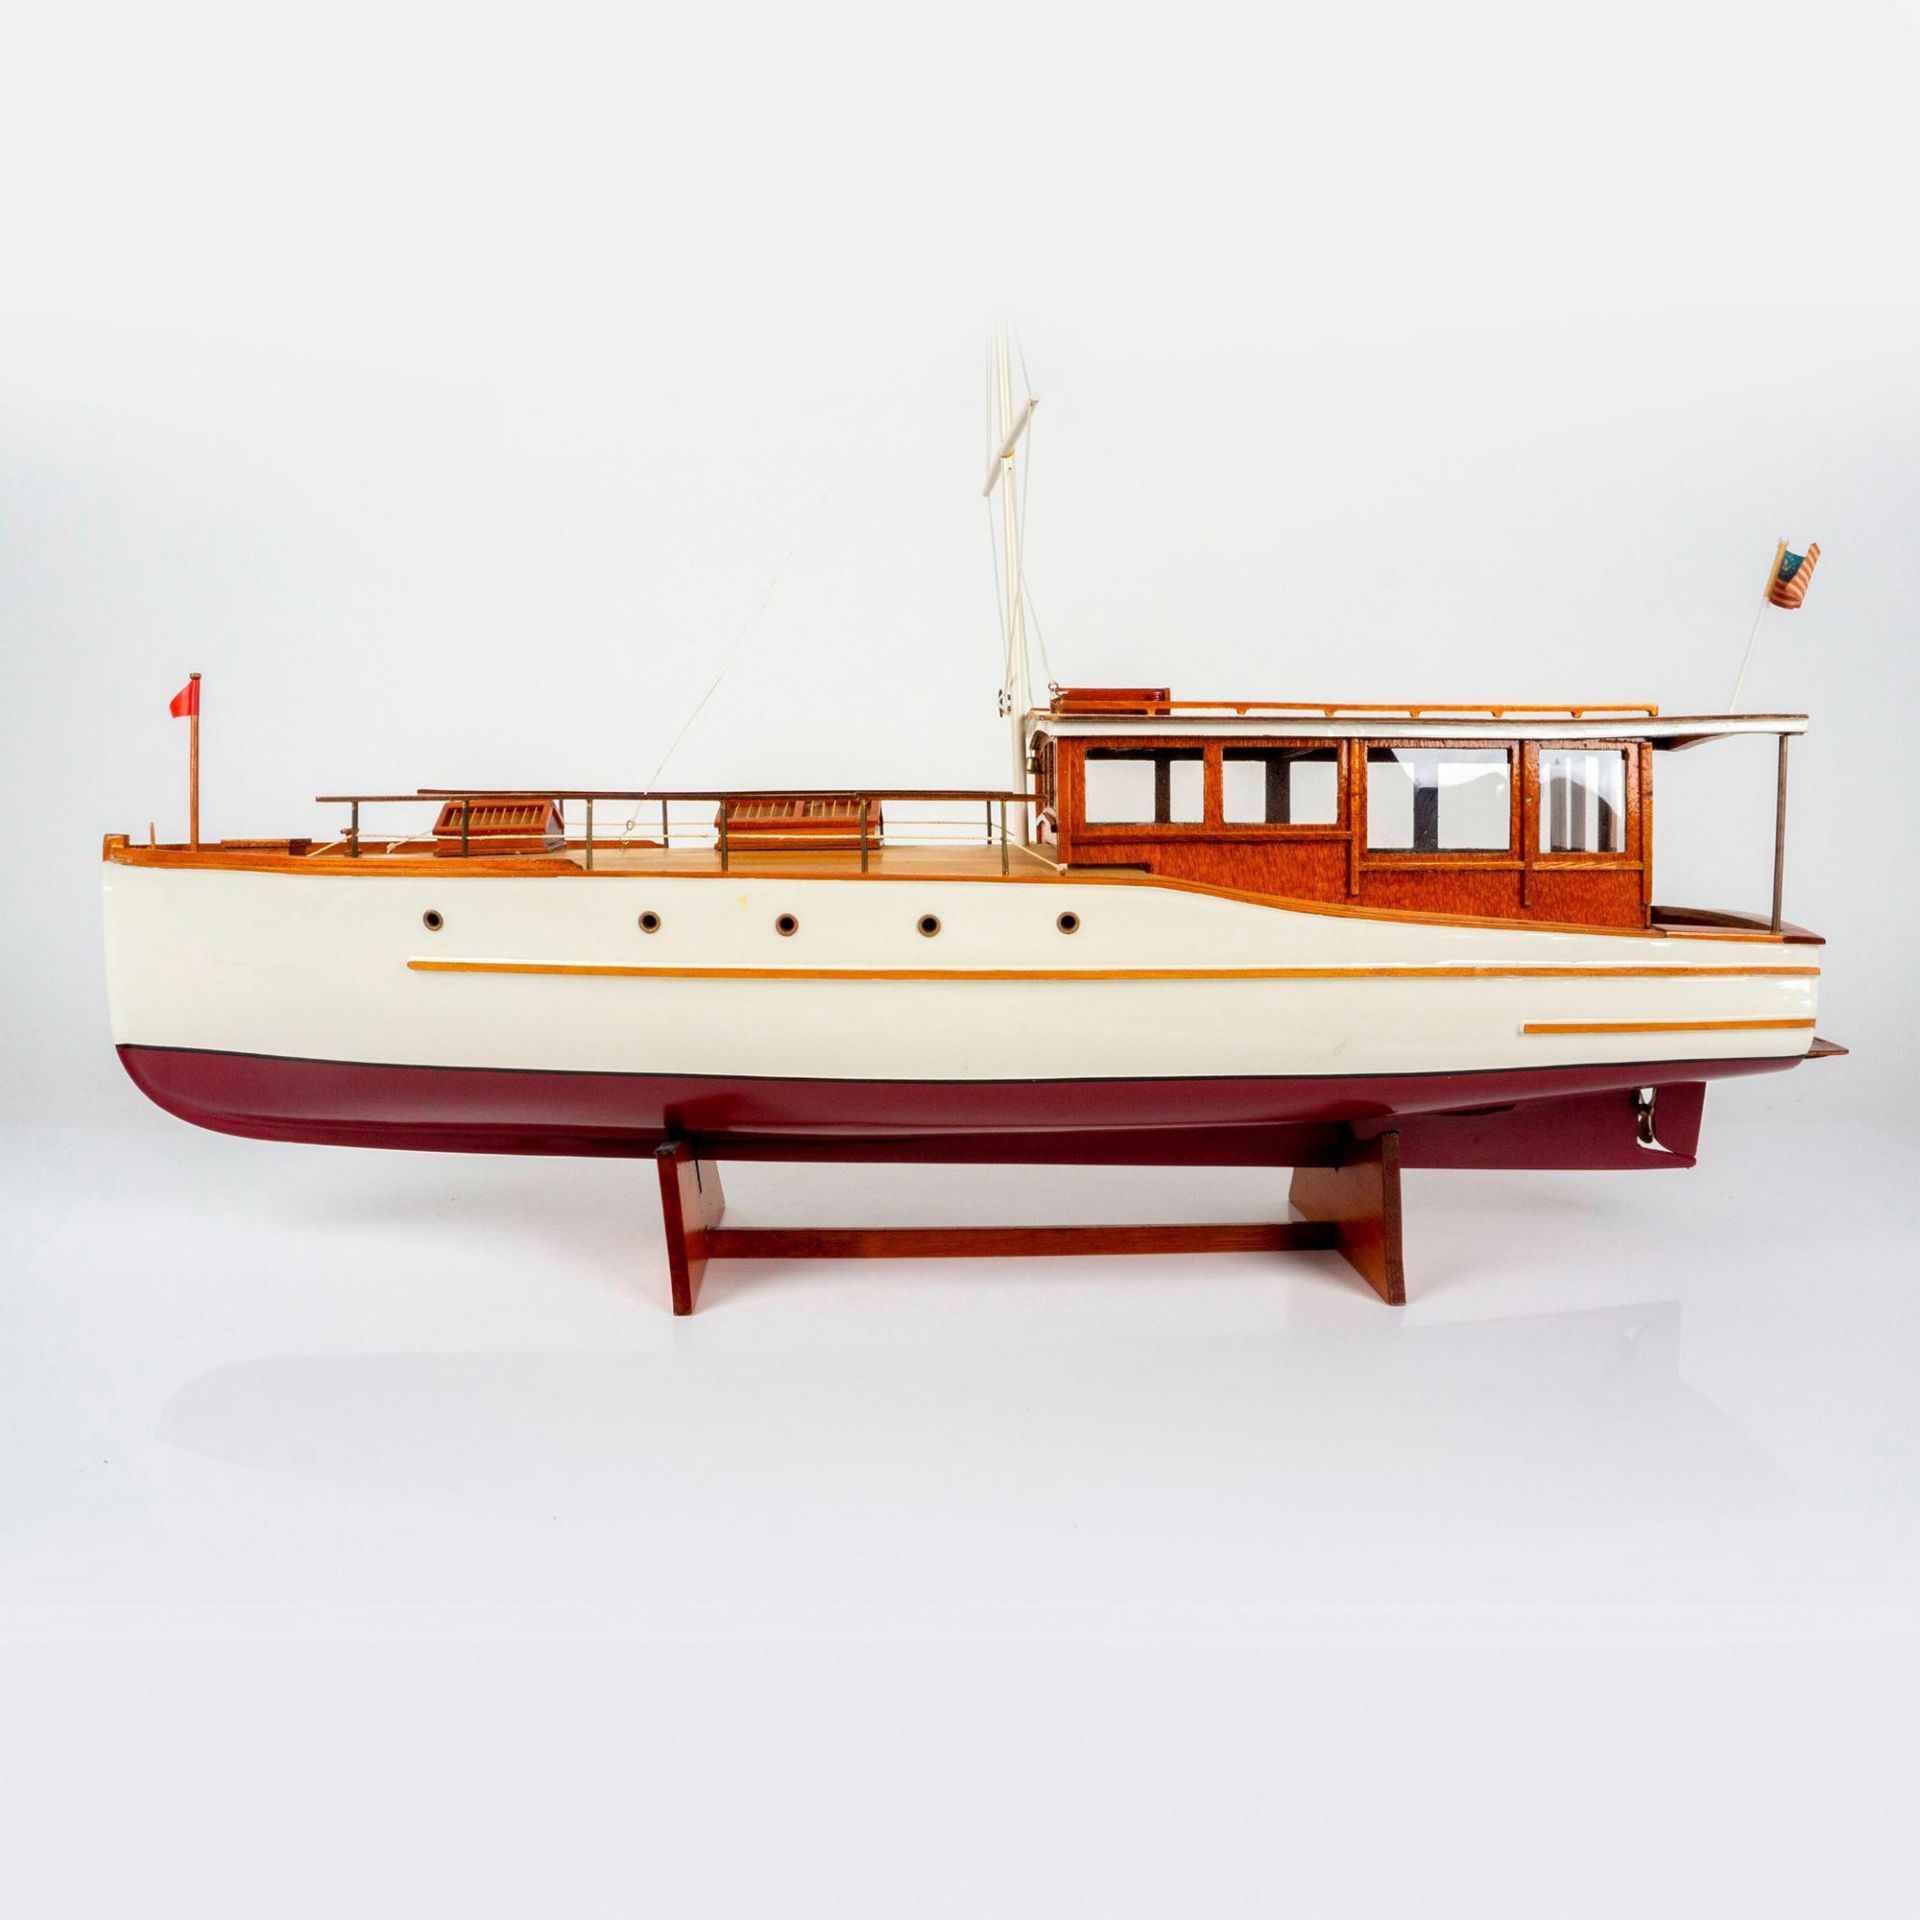 1929 Lake Union Dreamboat Large Wood Model Boat - Image 2 of 5